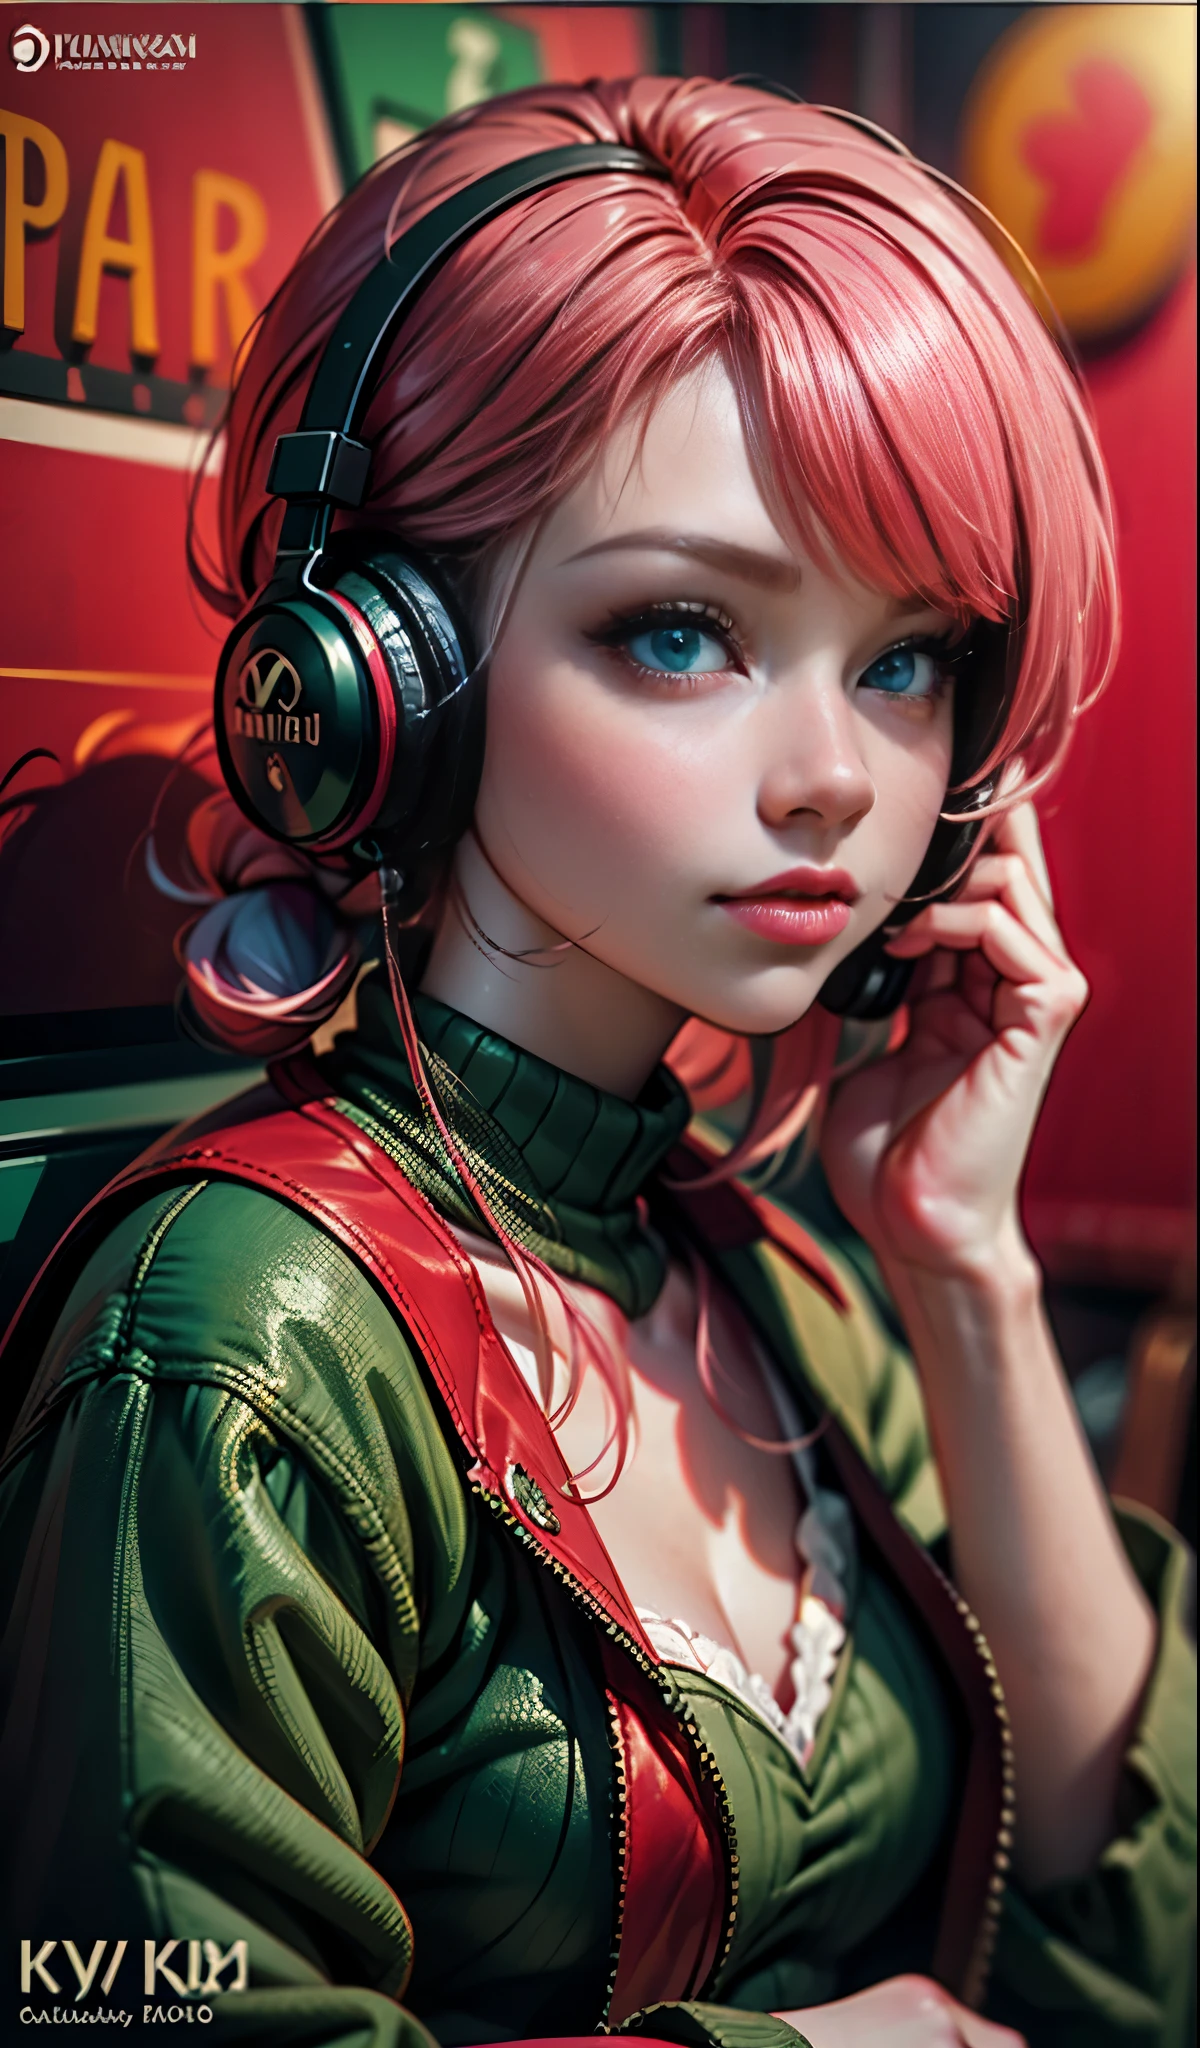 헤드폰을 끼고 있는 모델 소녀, 도시 배경, 에메랄드 그린 눈, 분홍색 머리, 복잡한 세부 사항, 심미적으로 기분 좋은 파스텔 색상, 포스터 배경, Ilya Kuvshinov의 예술